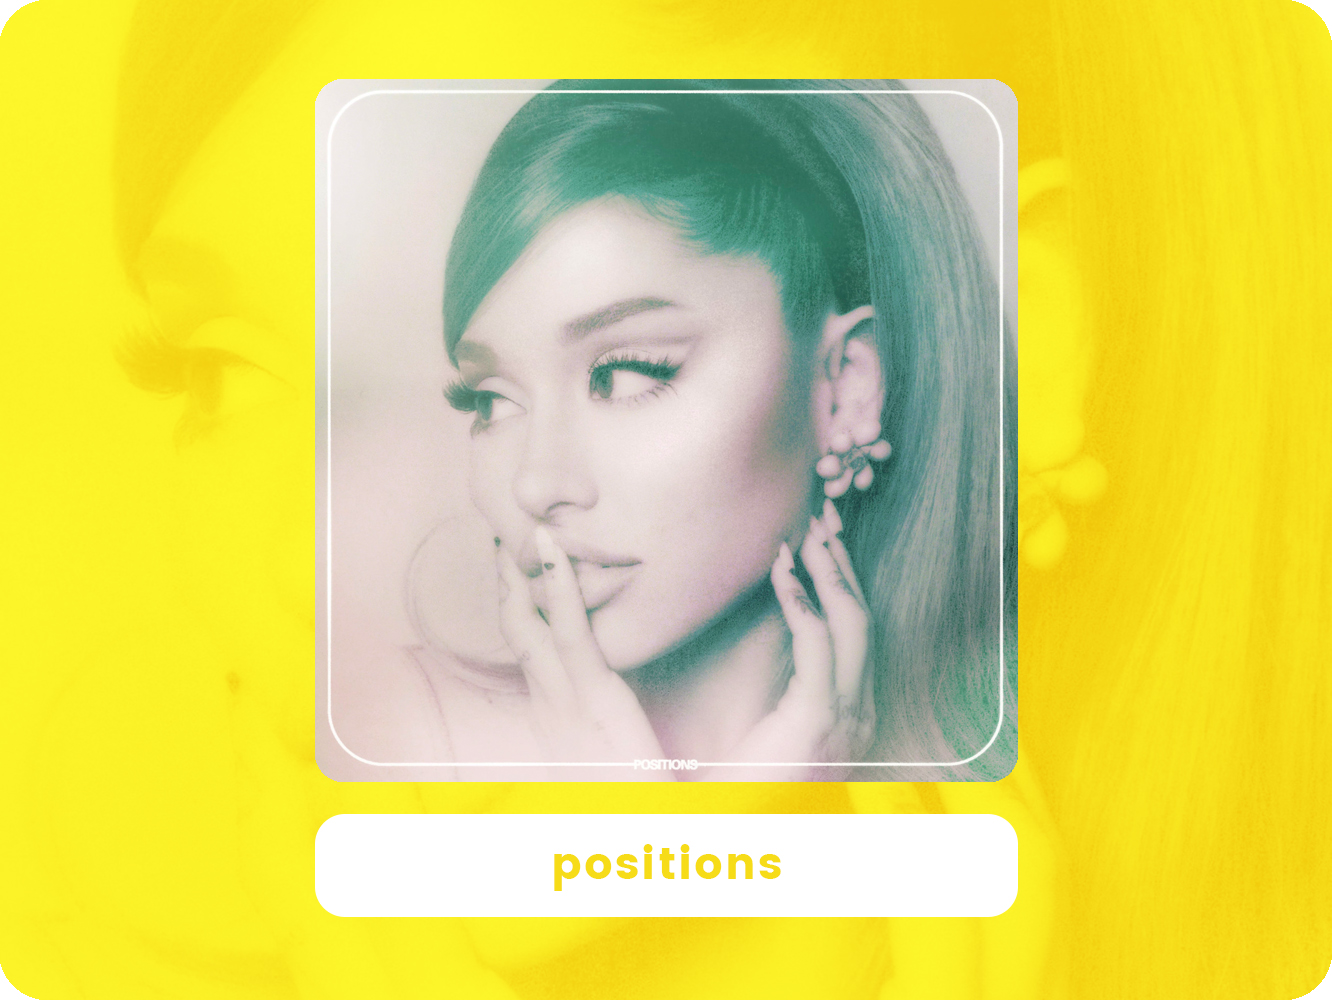  ‘Positions’, Ariana Grande se confina en el R&B sugerente